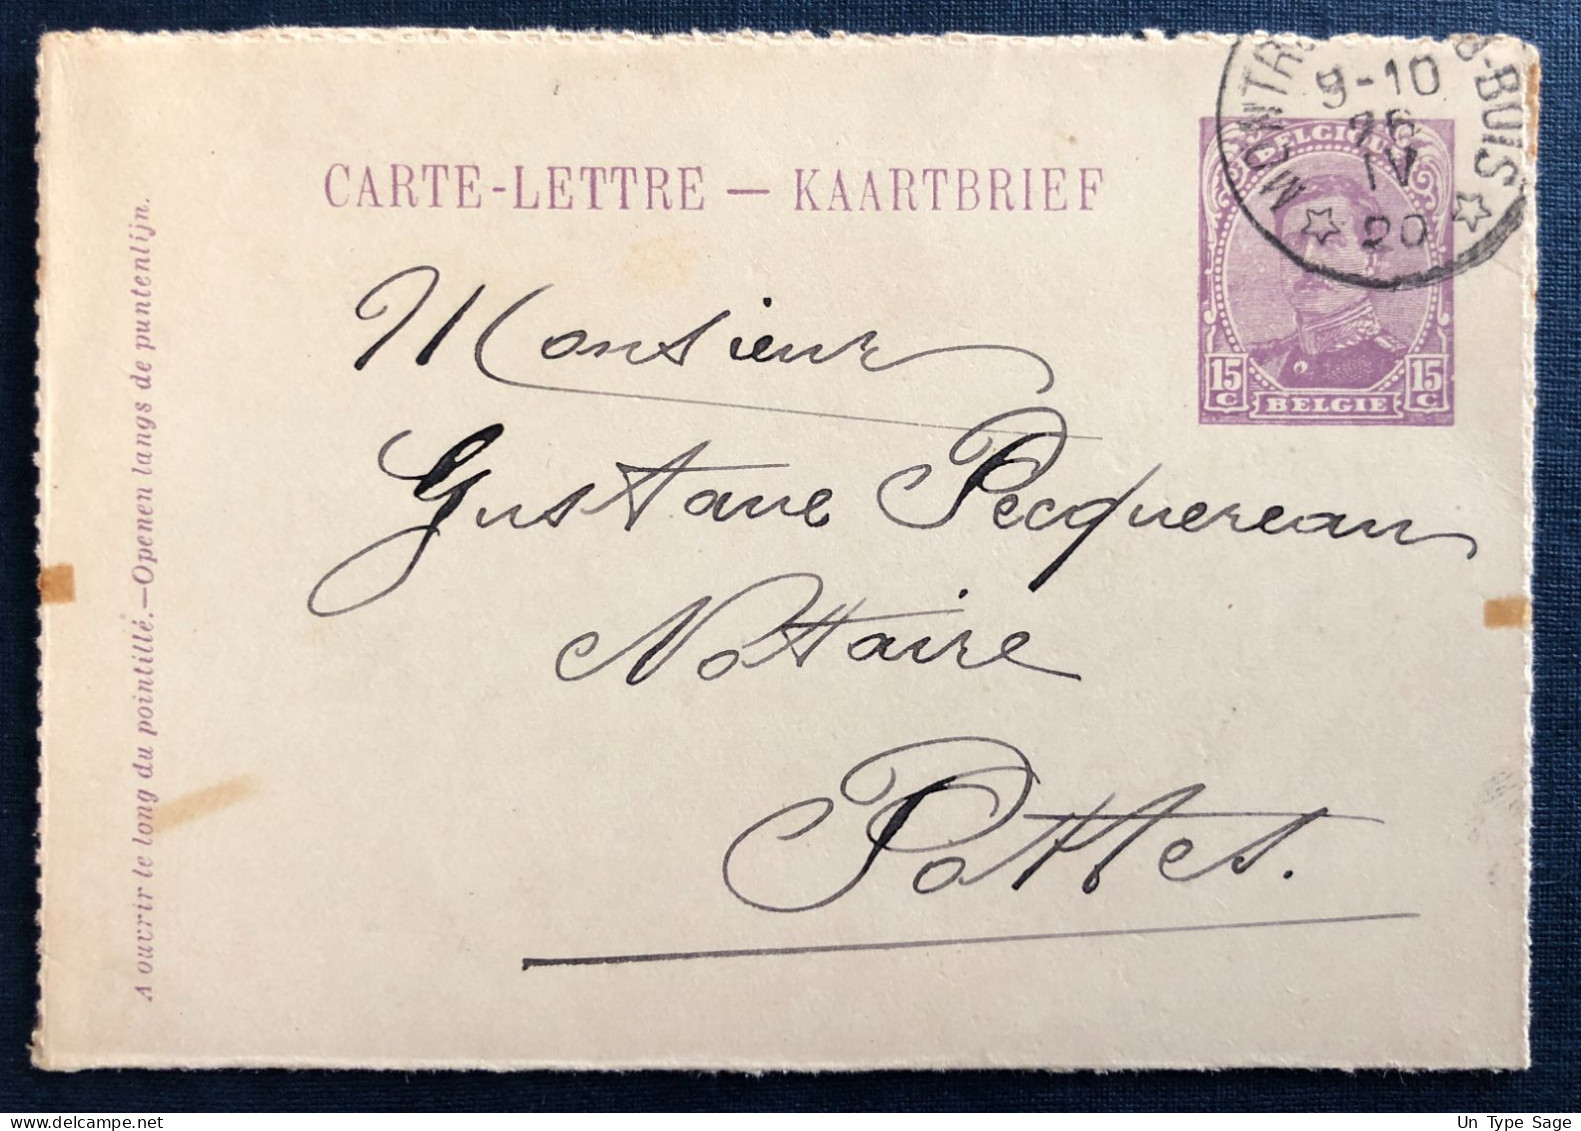 Belgique, Cachet Relais (étoile) Montrœul-au-Bois 26.IV.1920 Sur Entier Carte-lettre - (N769) - Sternenstempel